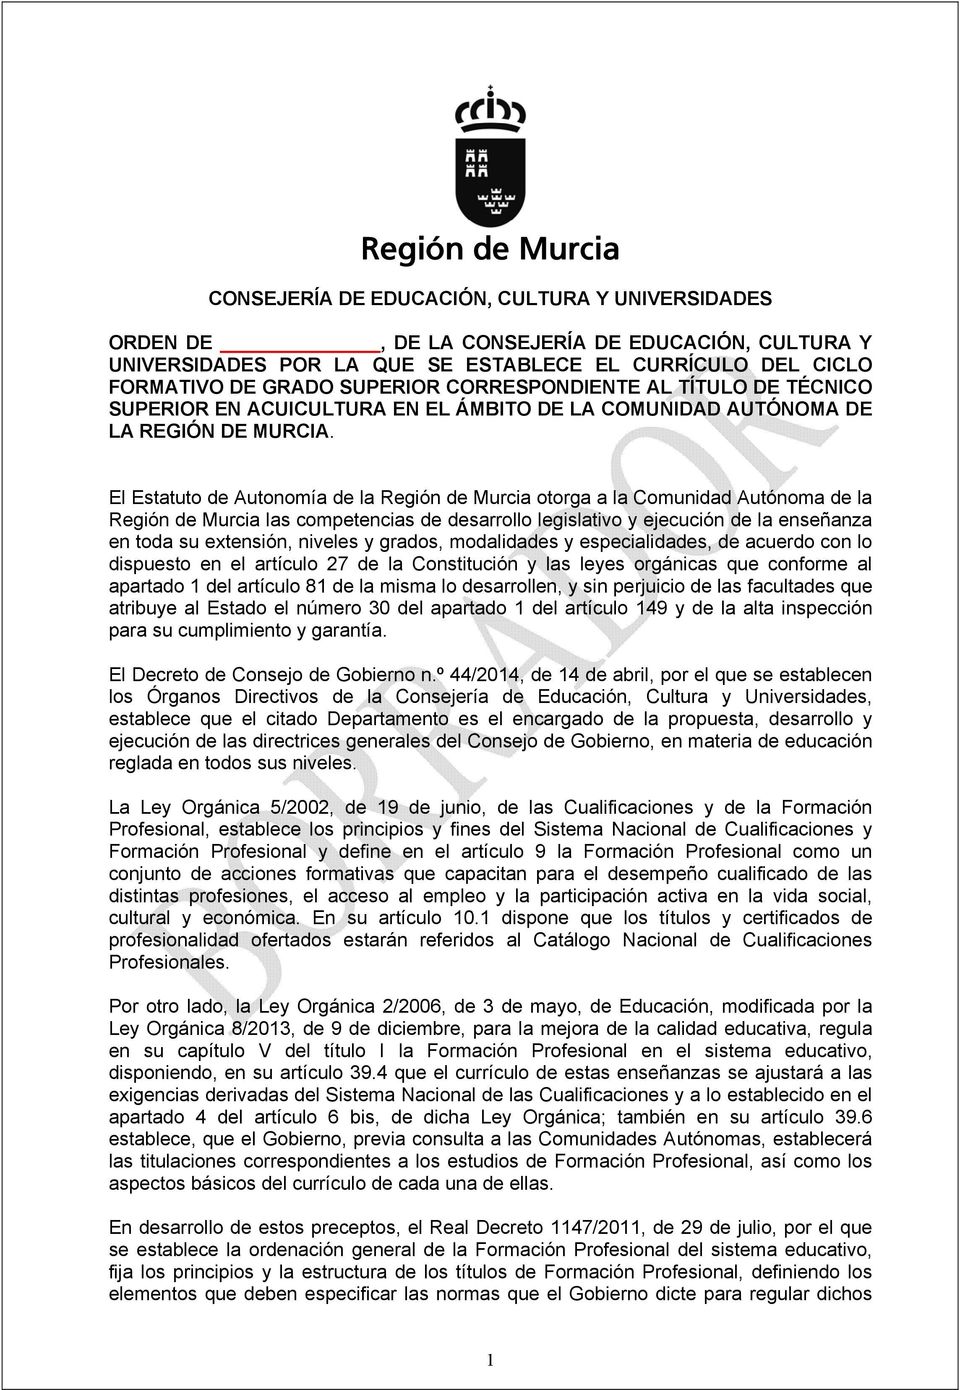 El Estatuto de Autonomía de la Región de Murcia otorga a la Comunidad Autónoma de la Región de Murcia las competencias de desarrollo legislativo y ejecución de la enseñanza en toda su extensión,